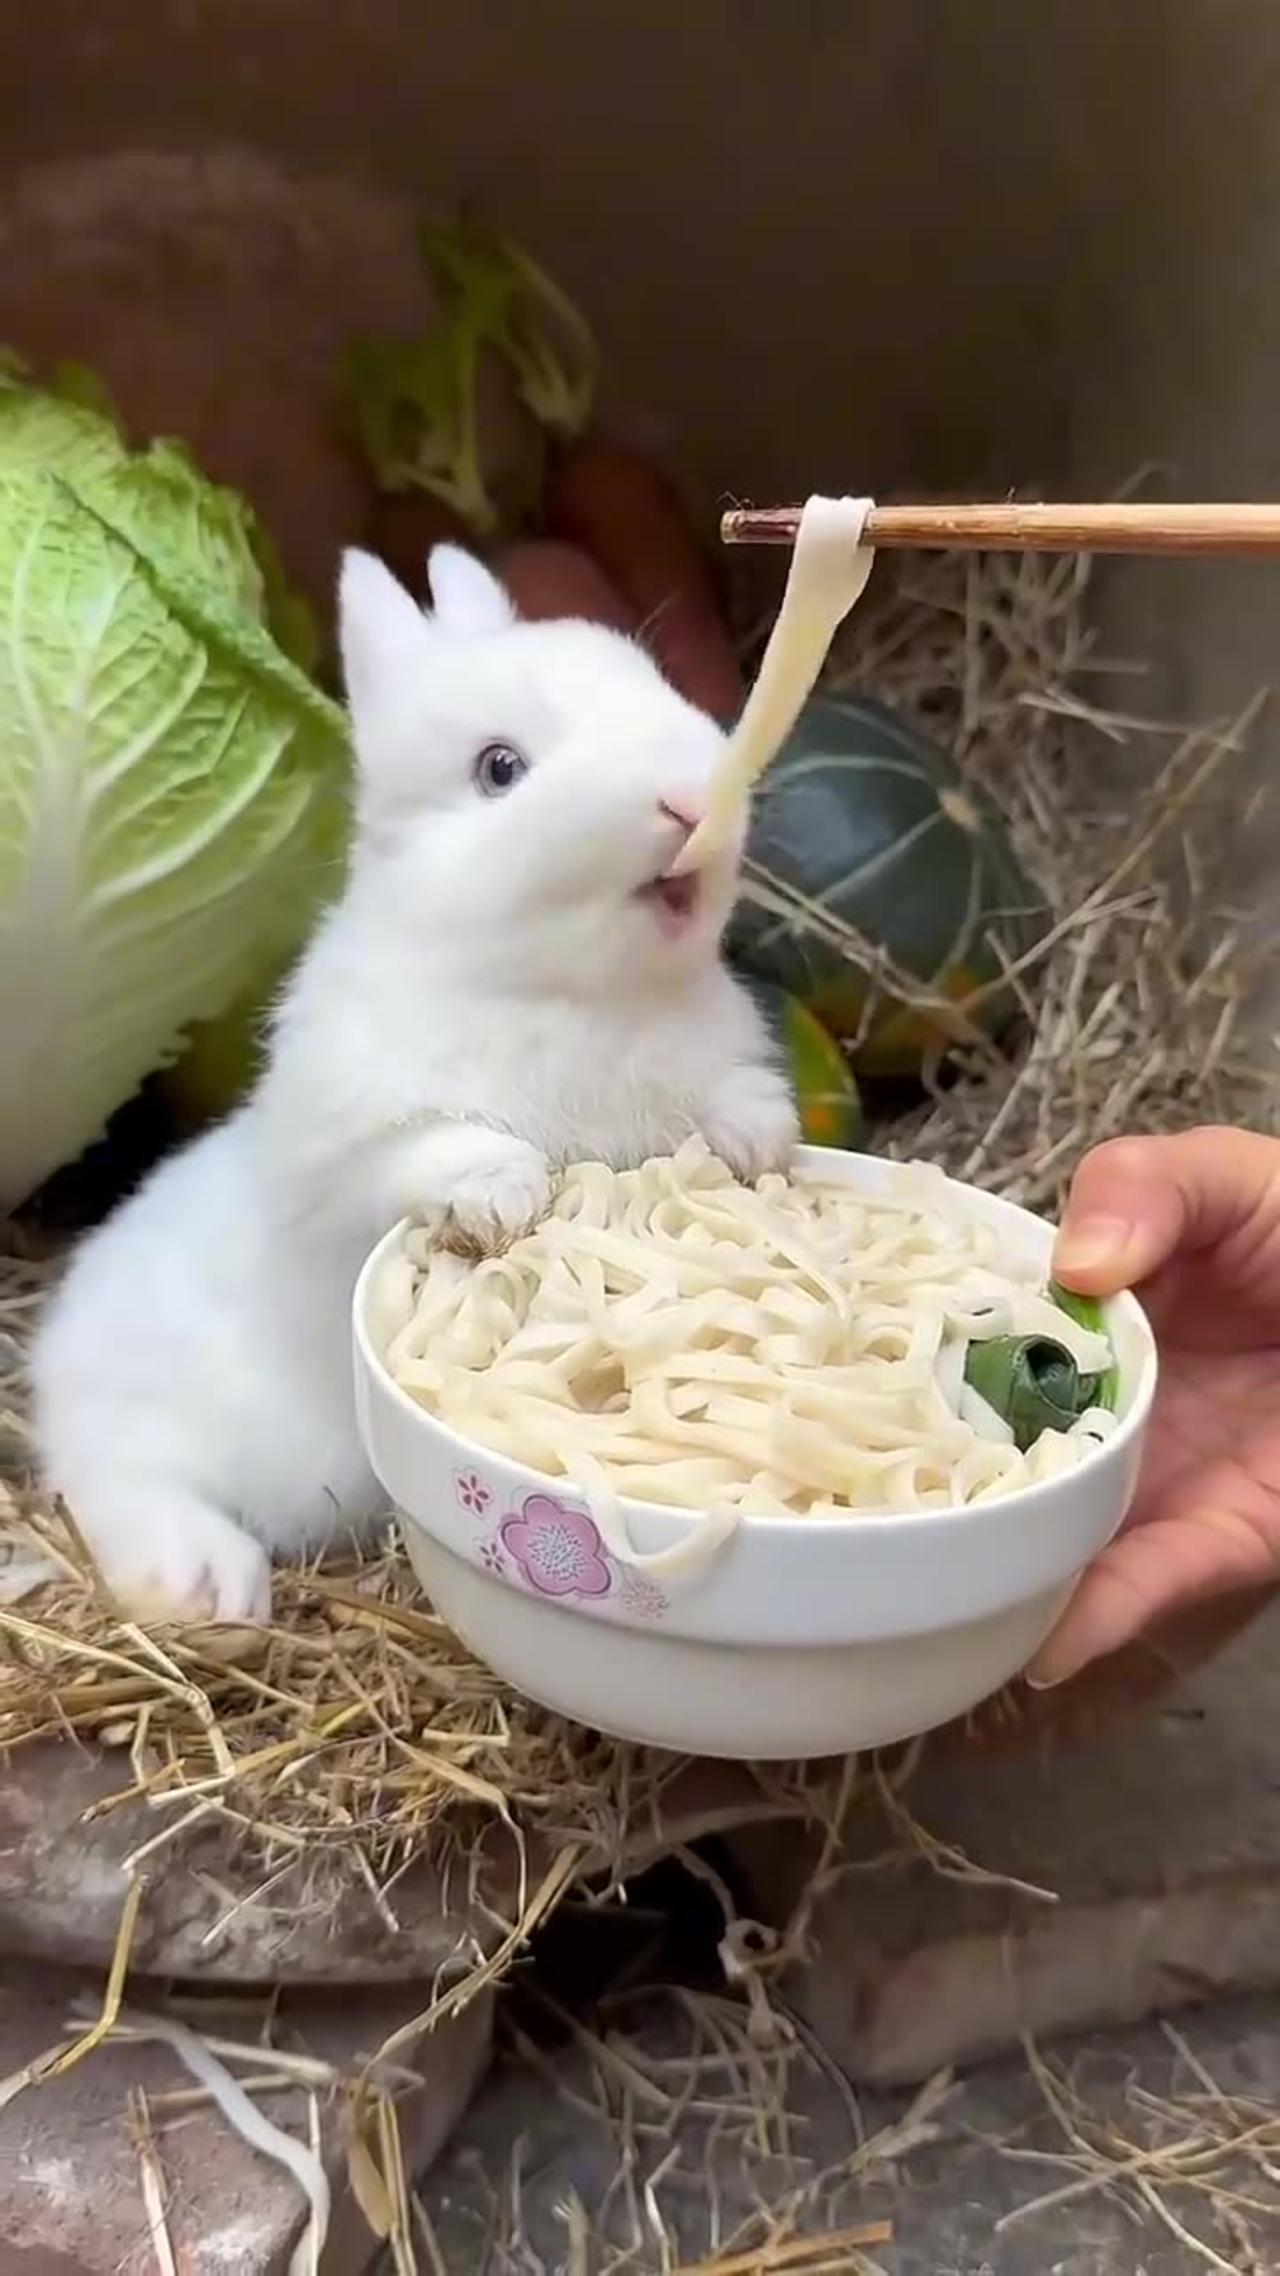 Little rabbit eat noodles🐇🐇